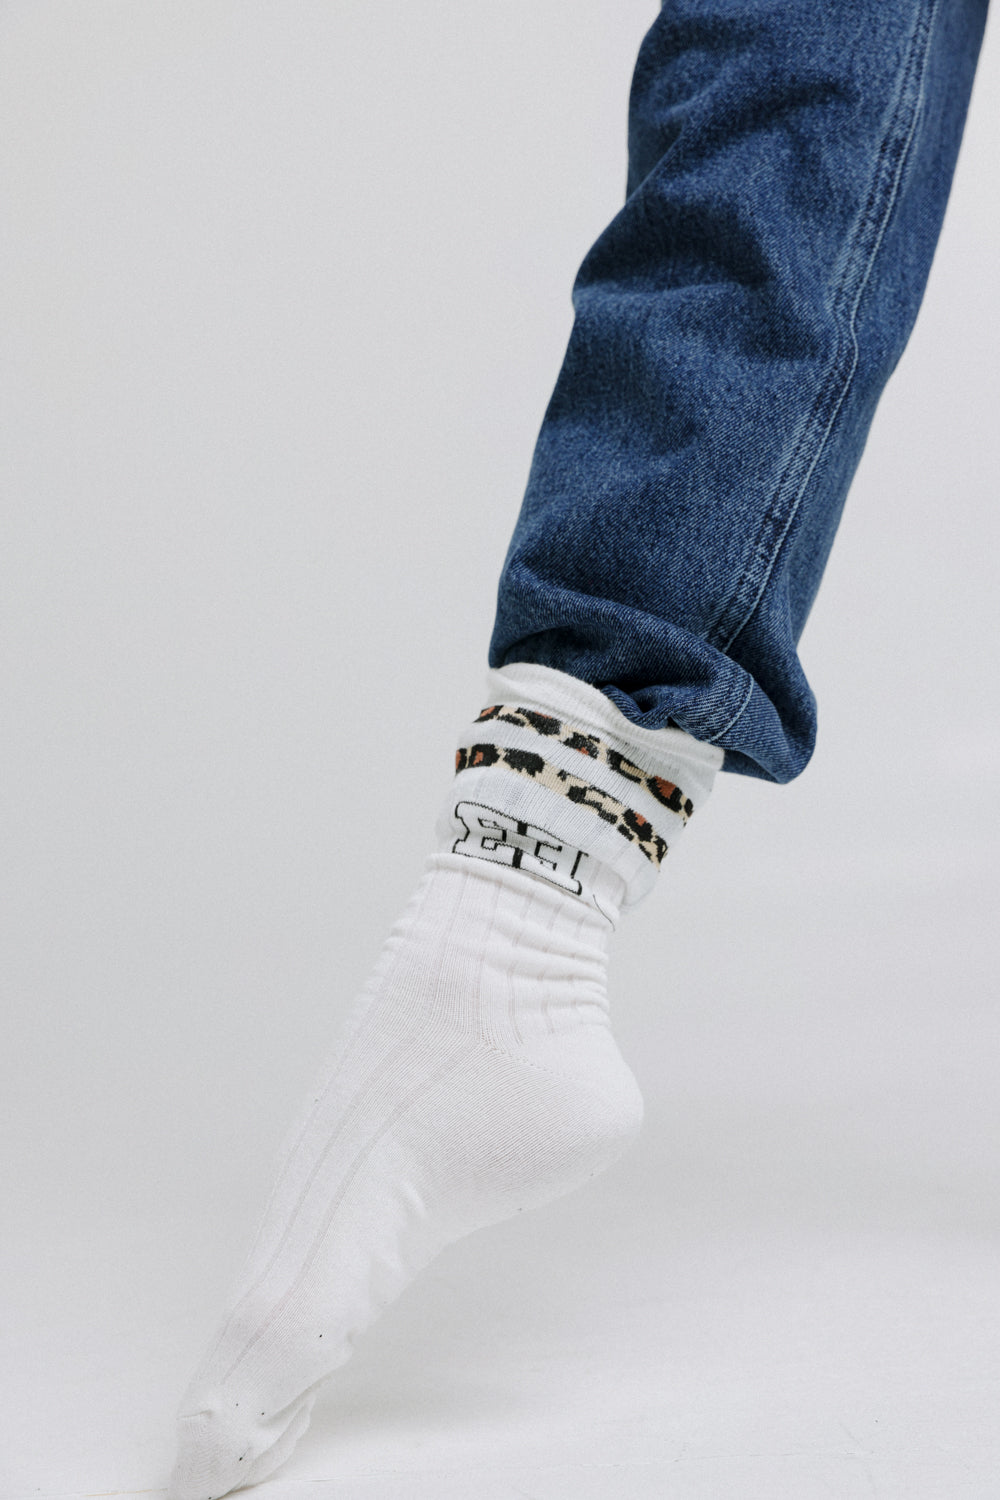 EE Leopard Stripes Socks